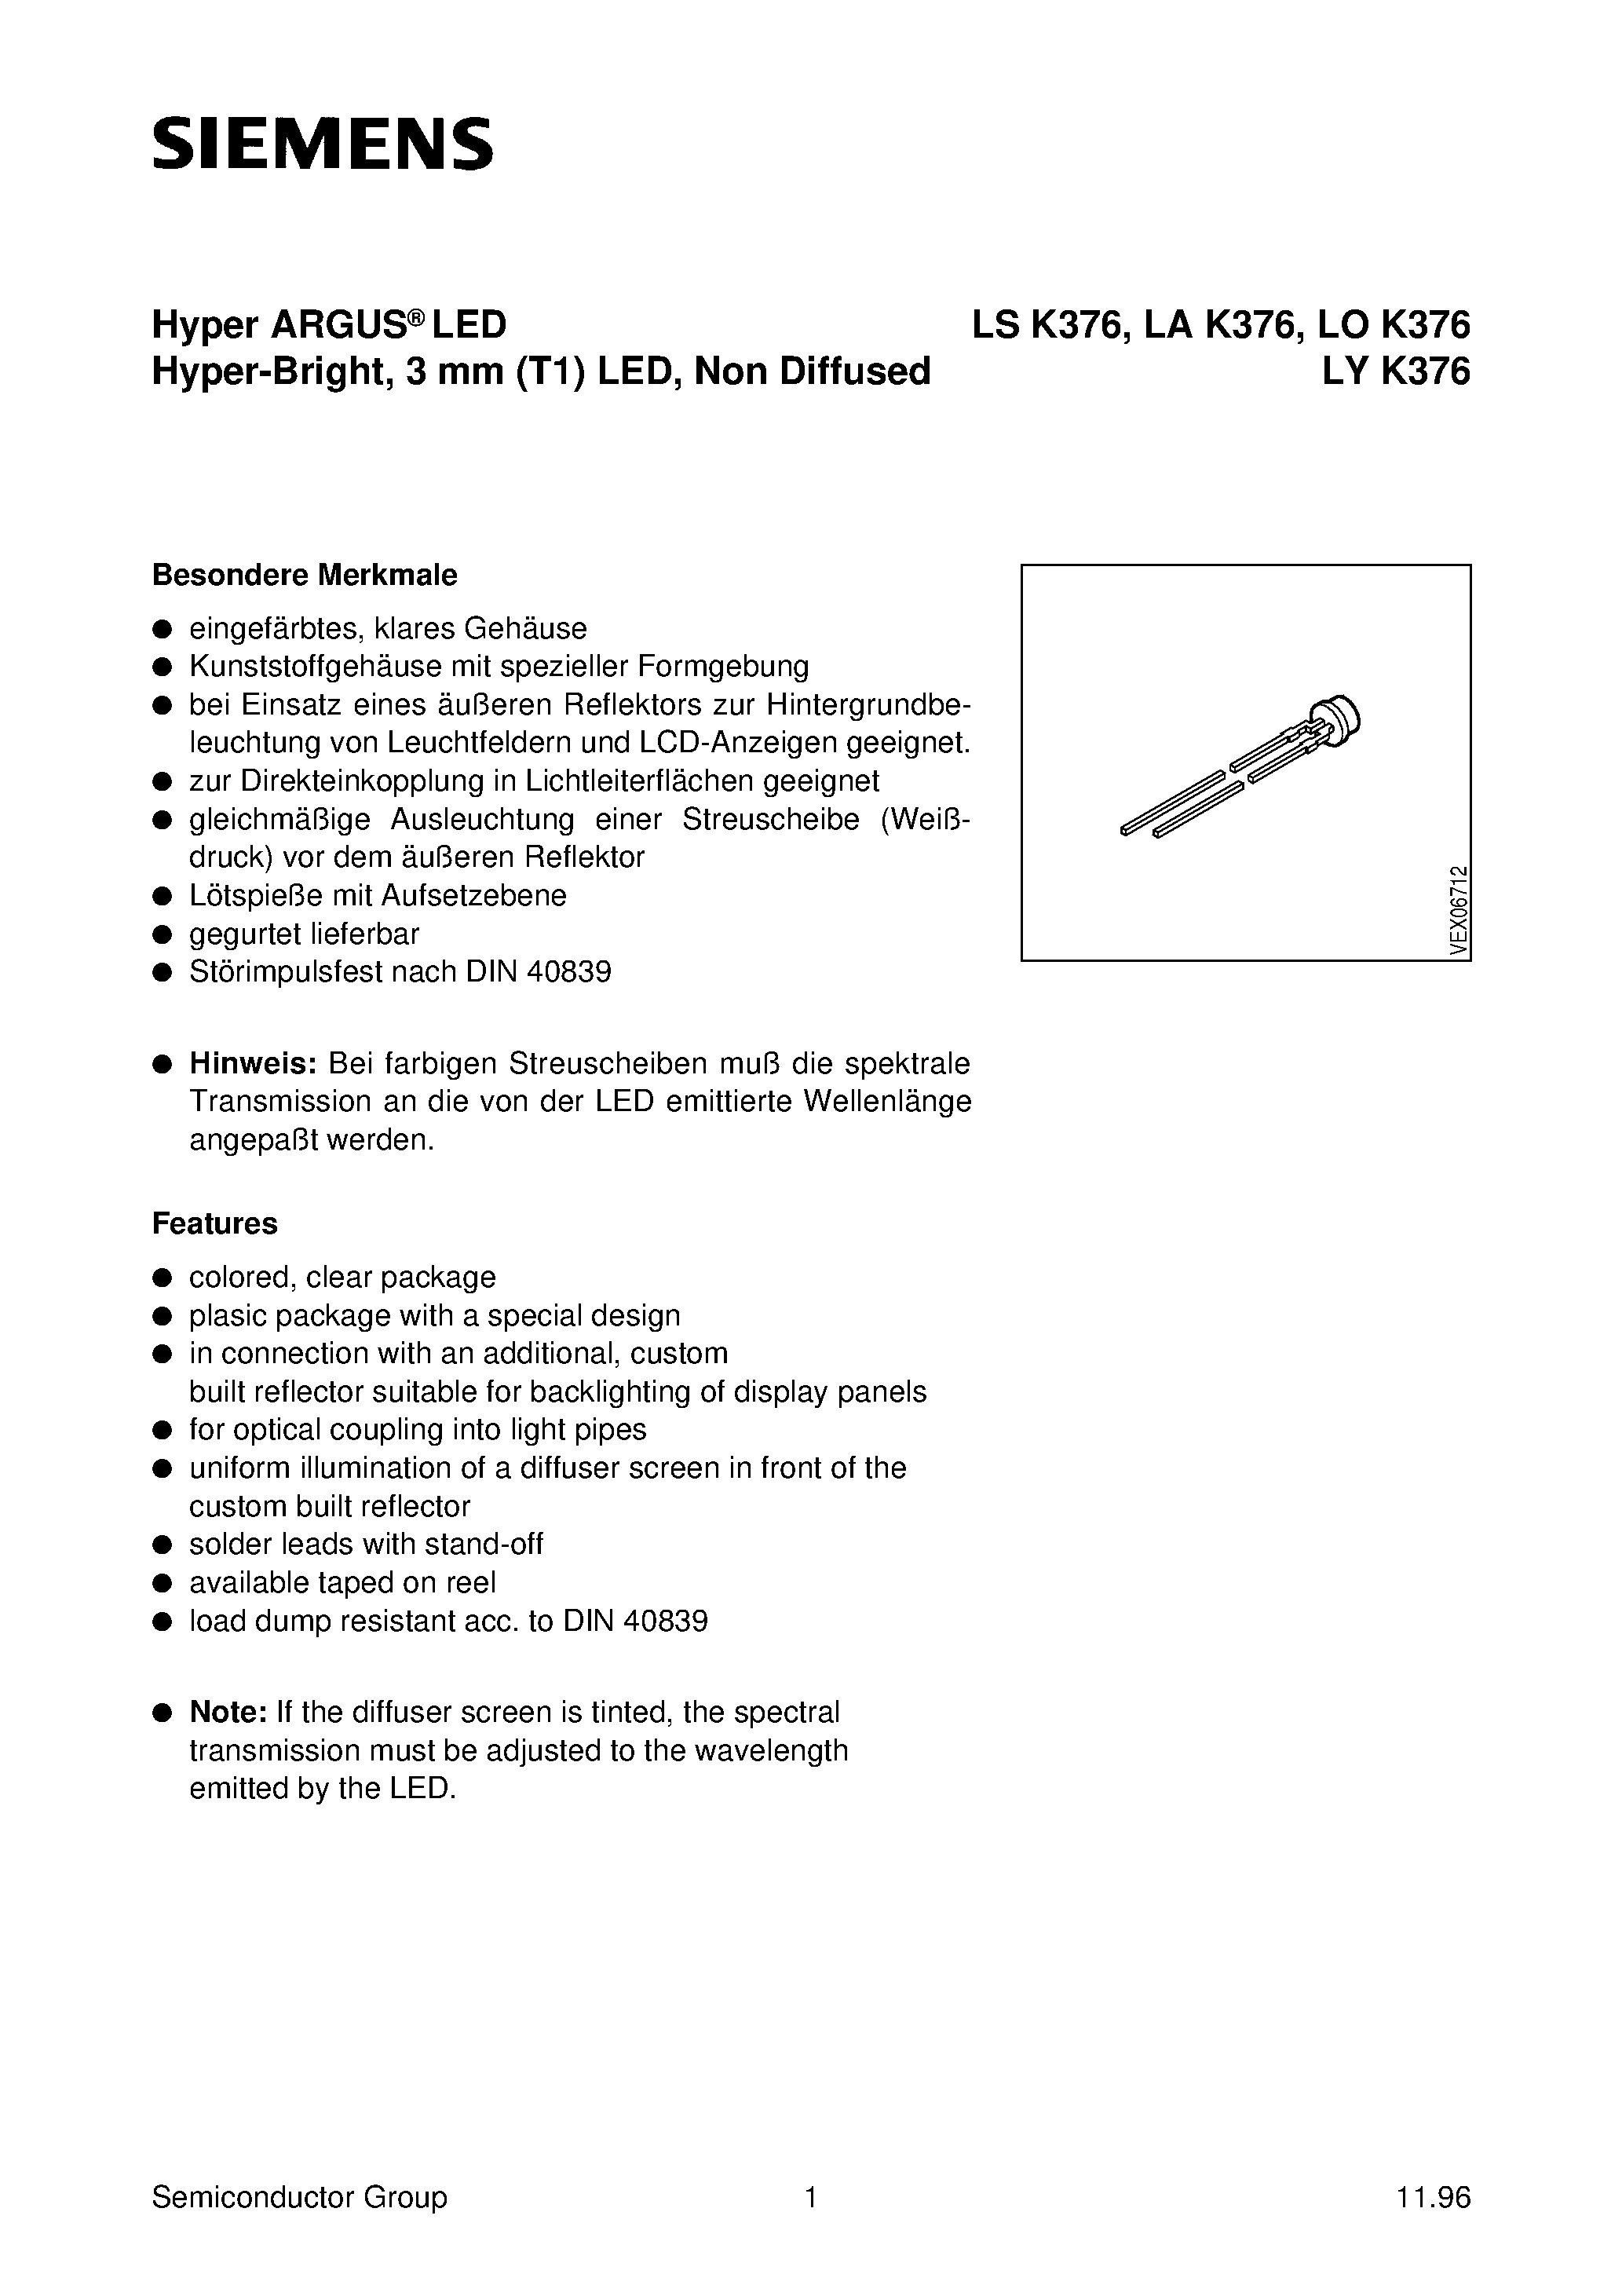 Даташит LYK376-U - Hyper ARGUS LED Hyper-Bright/ 3 mm T1 LED/ Non Diffused страница 1